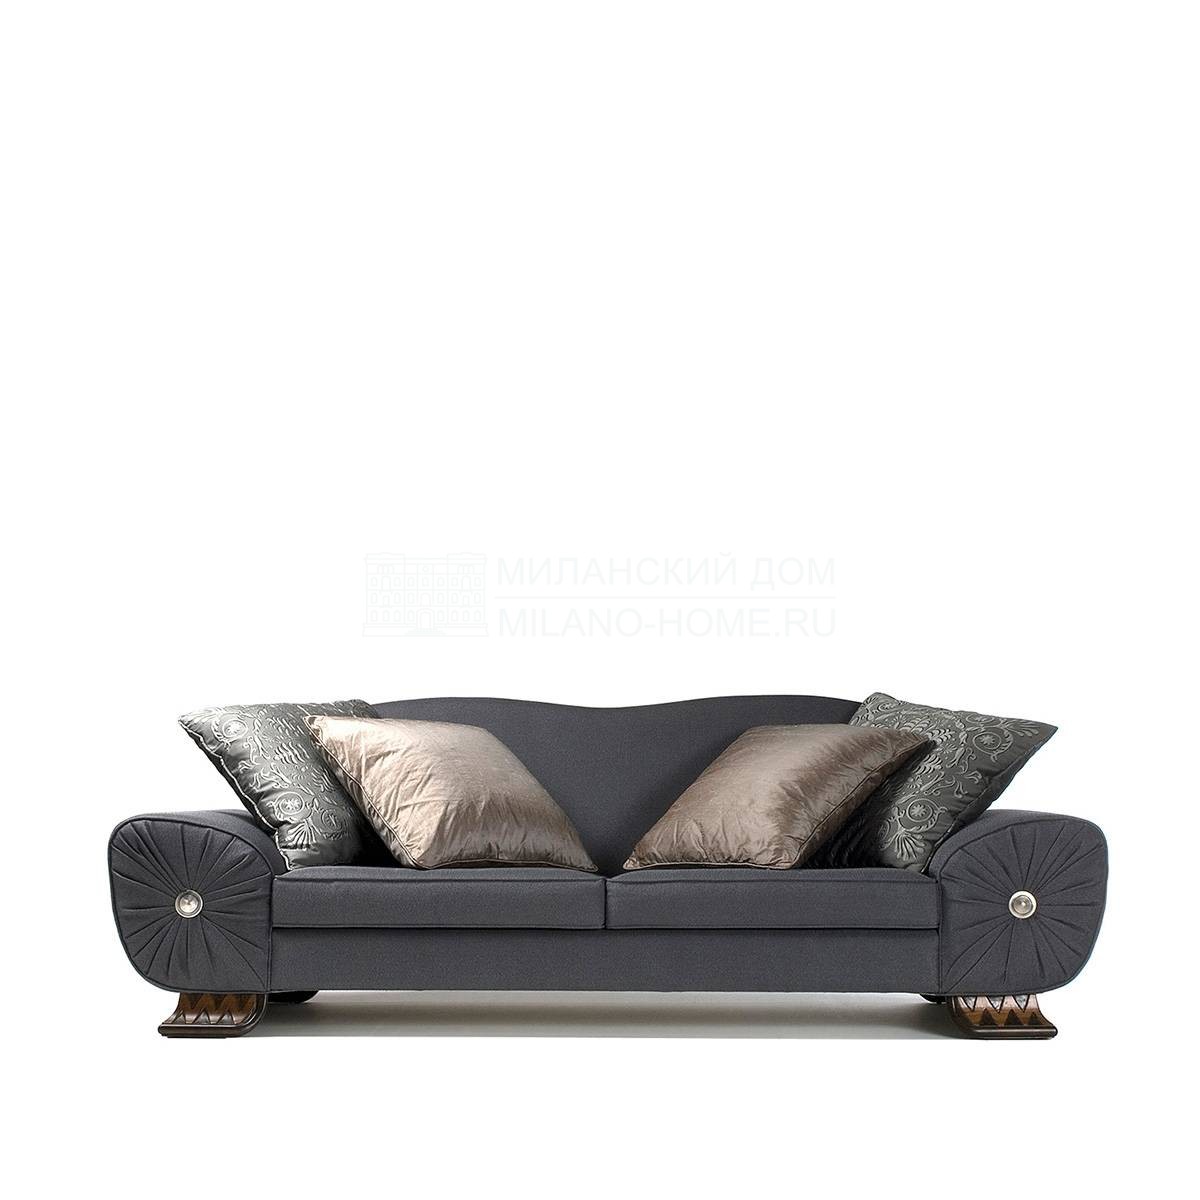 Прямой диван Felipe/S1132/S1123 из Испании фабрики COLECCION ALEXANDRA